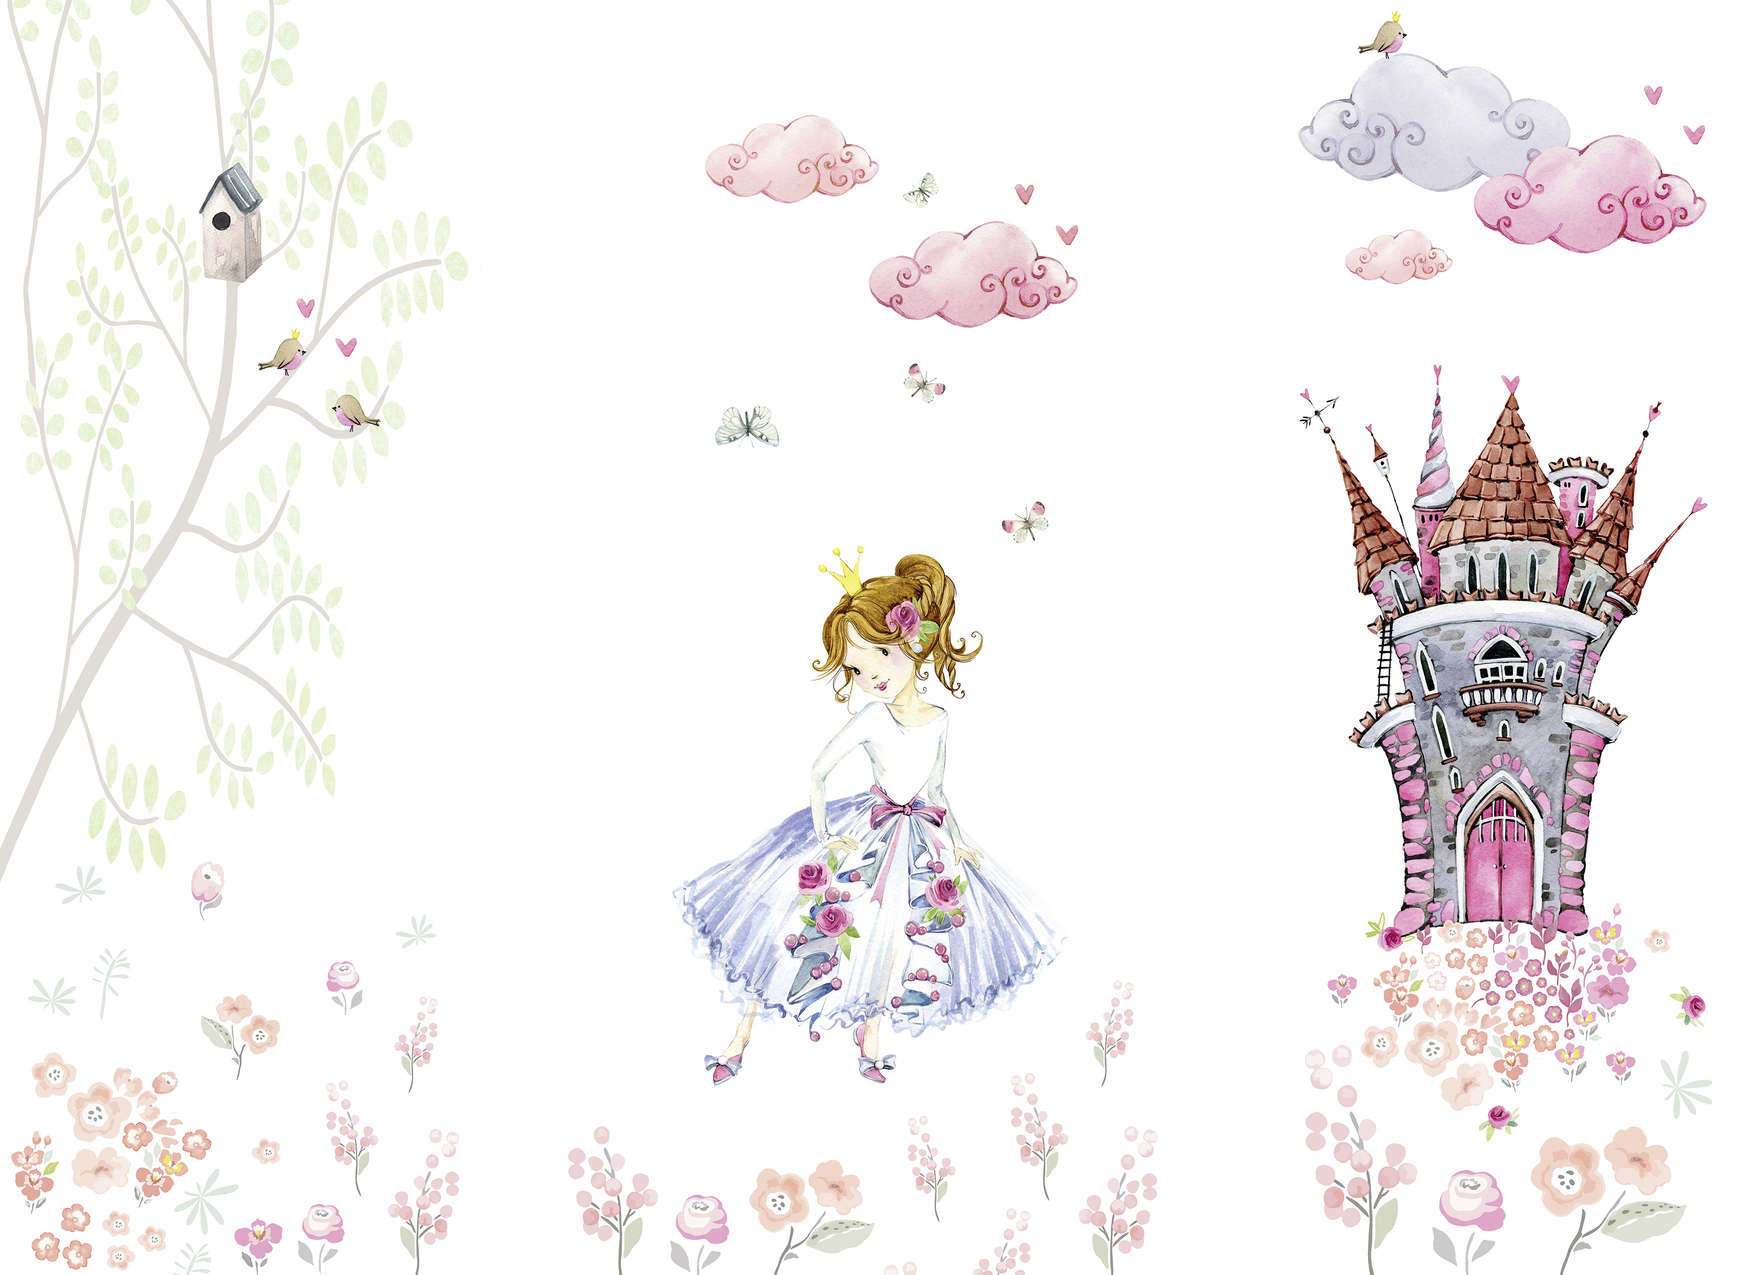             Fototapete mit Prinzessin im Schlossgarten Kinderzimmer – Rosa, Weiß, Grün
        